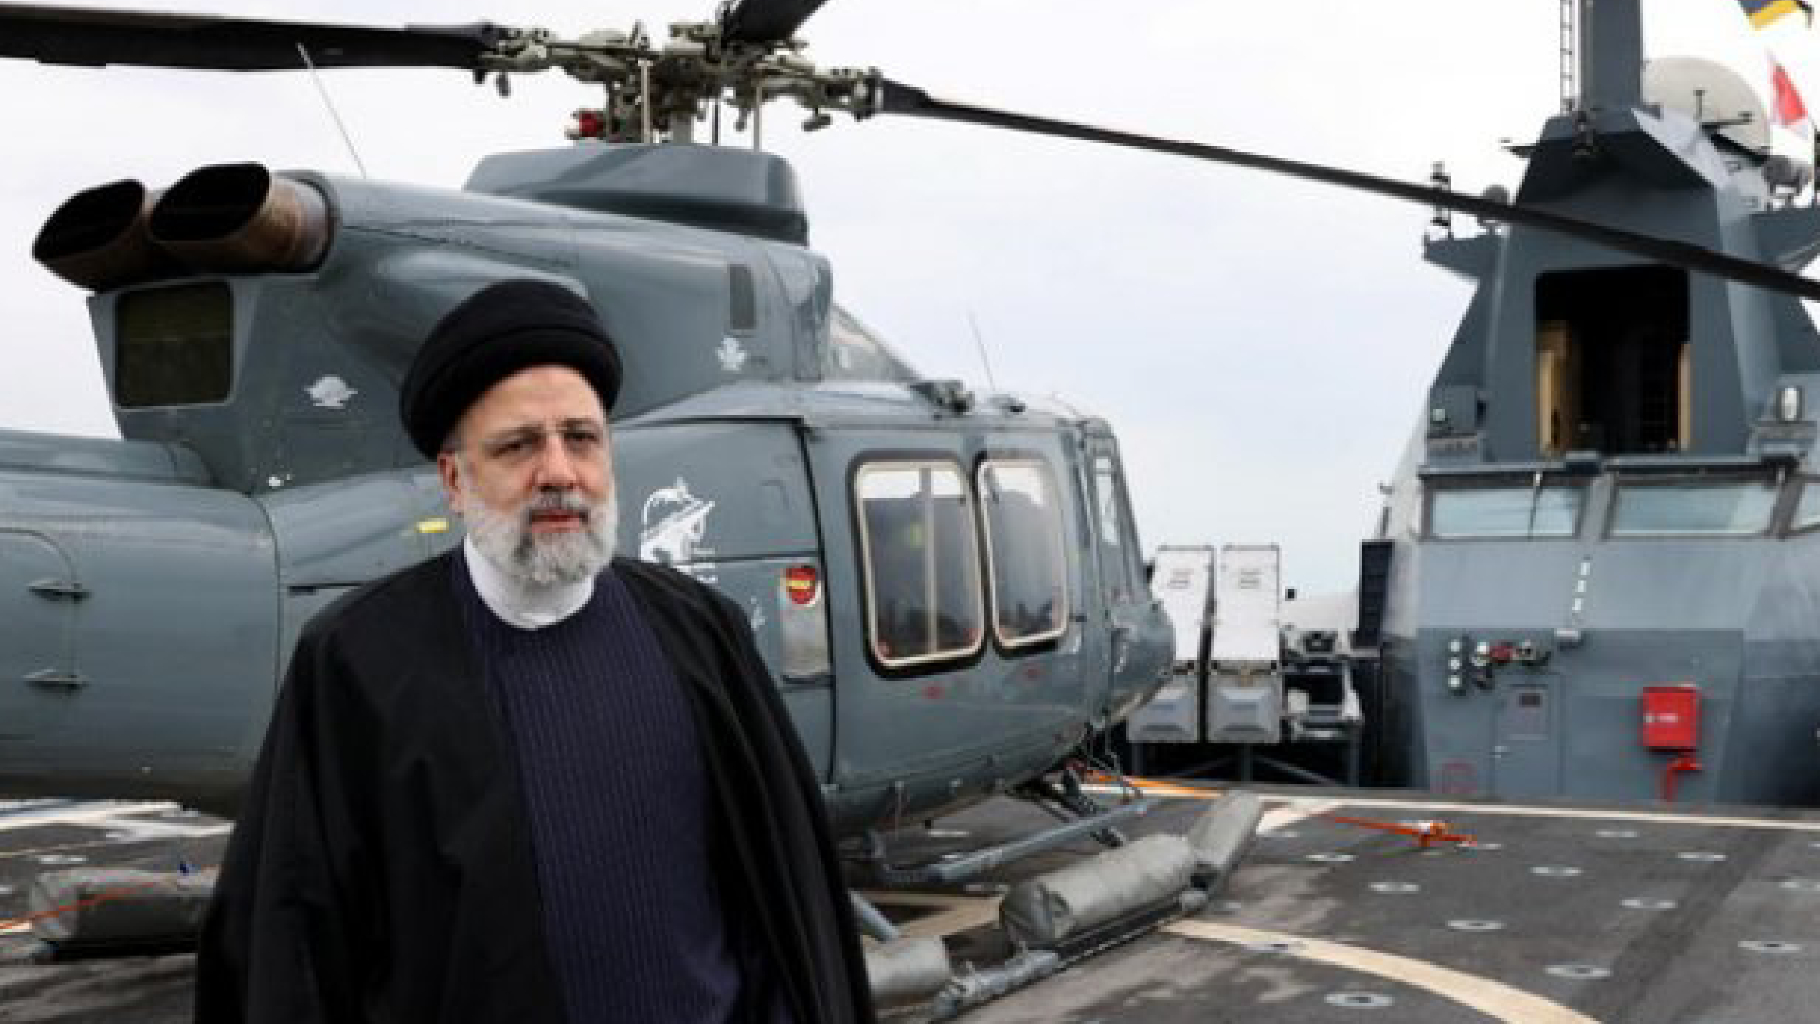 Iran, caduto l’elicottero del presidente Raisi. Fonti occidentali: “È morto”. Raggiunto il luogo  – DIRETTA